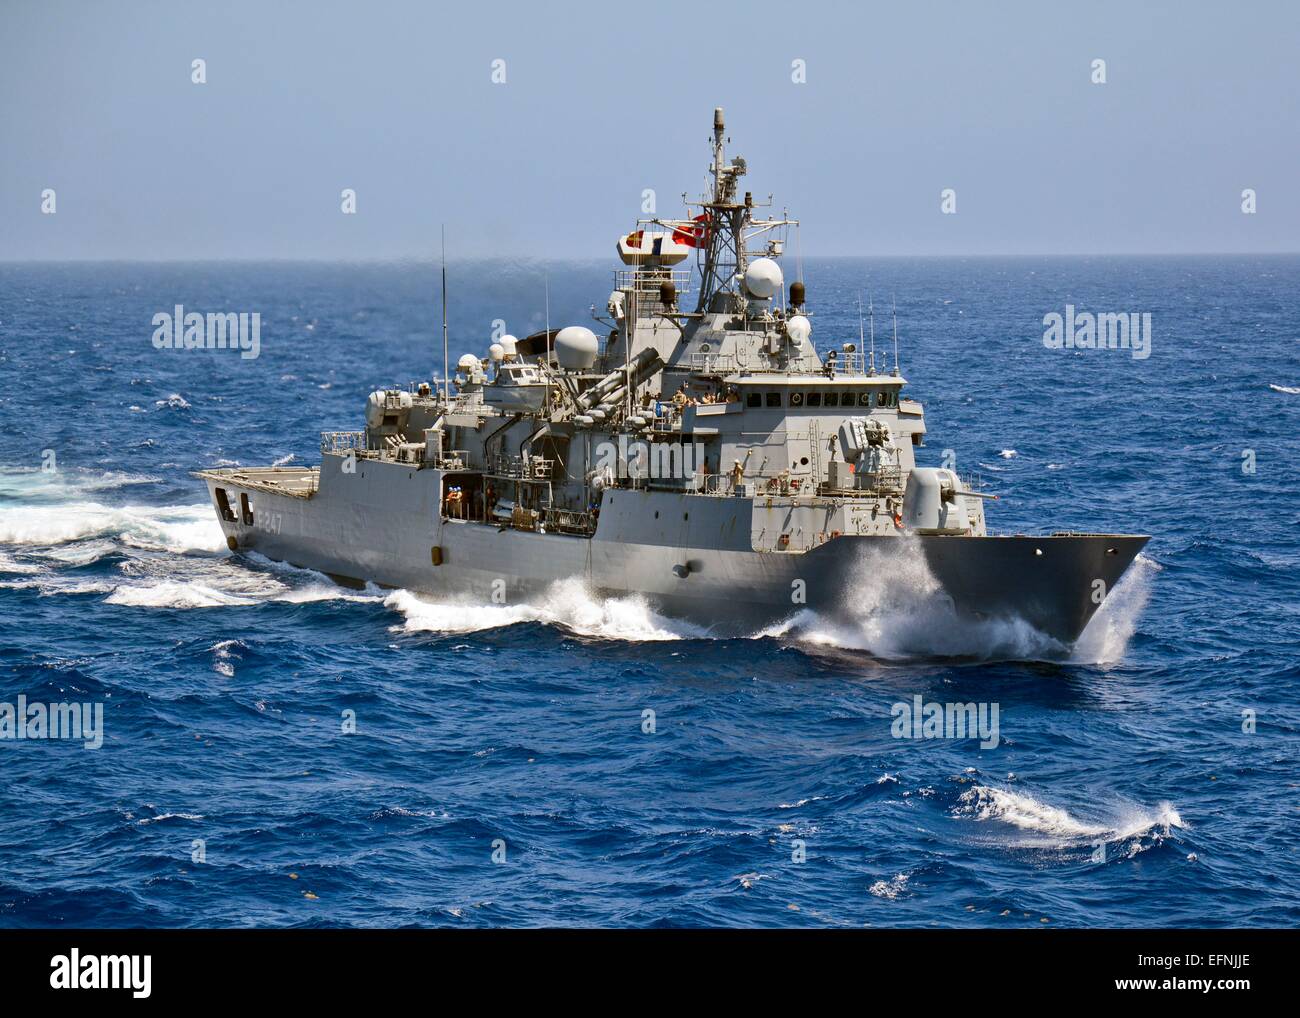 La marine turque Salih Reis la frégate de classe Kemalreis TCG manoeuvres lors des opérations maritimes de l'OTAN, le 28 juillet 2014 dans l'océan Atlantique. Banque D'Images